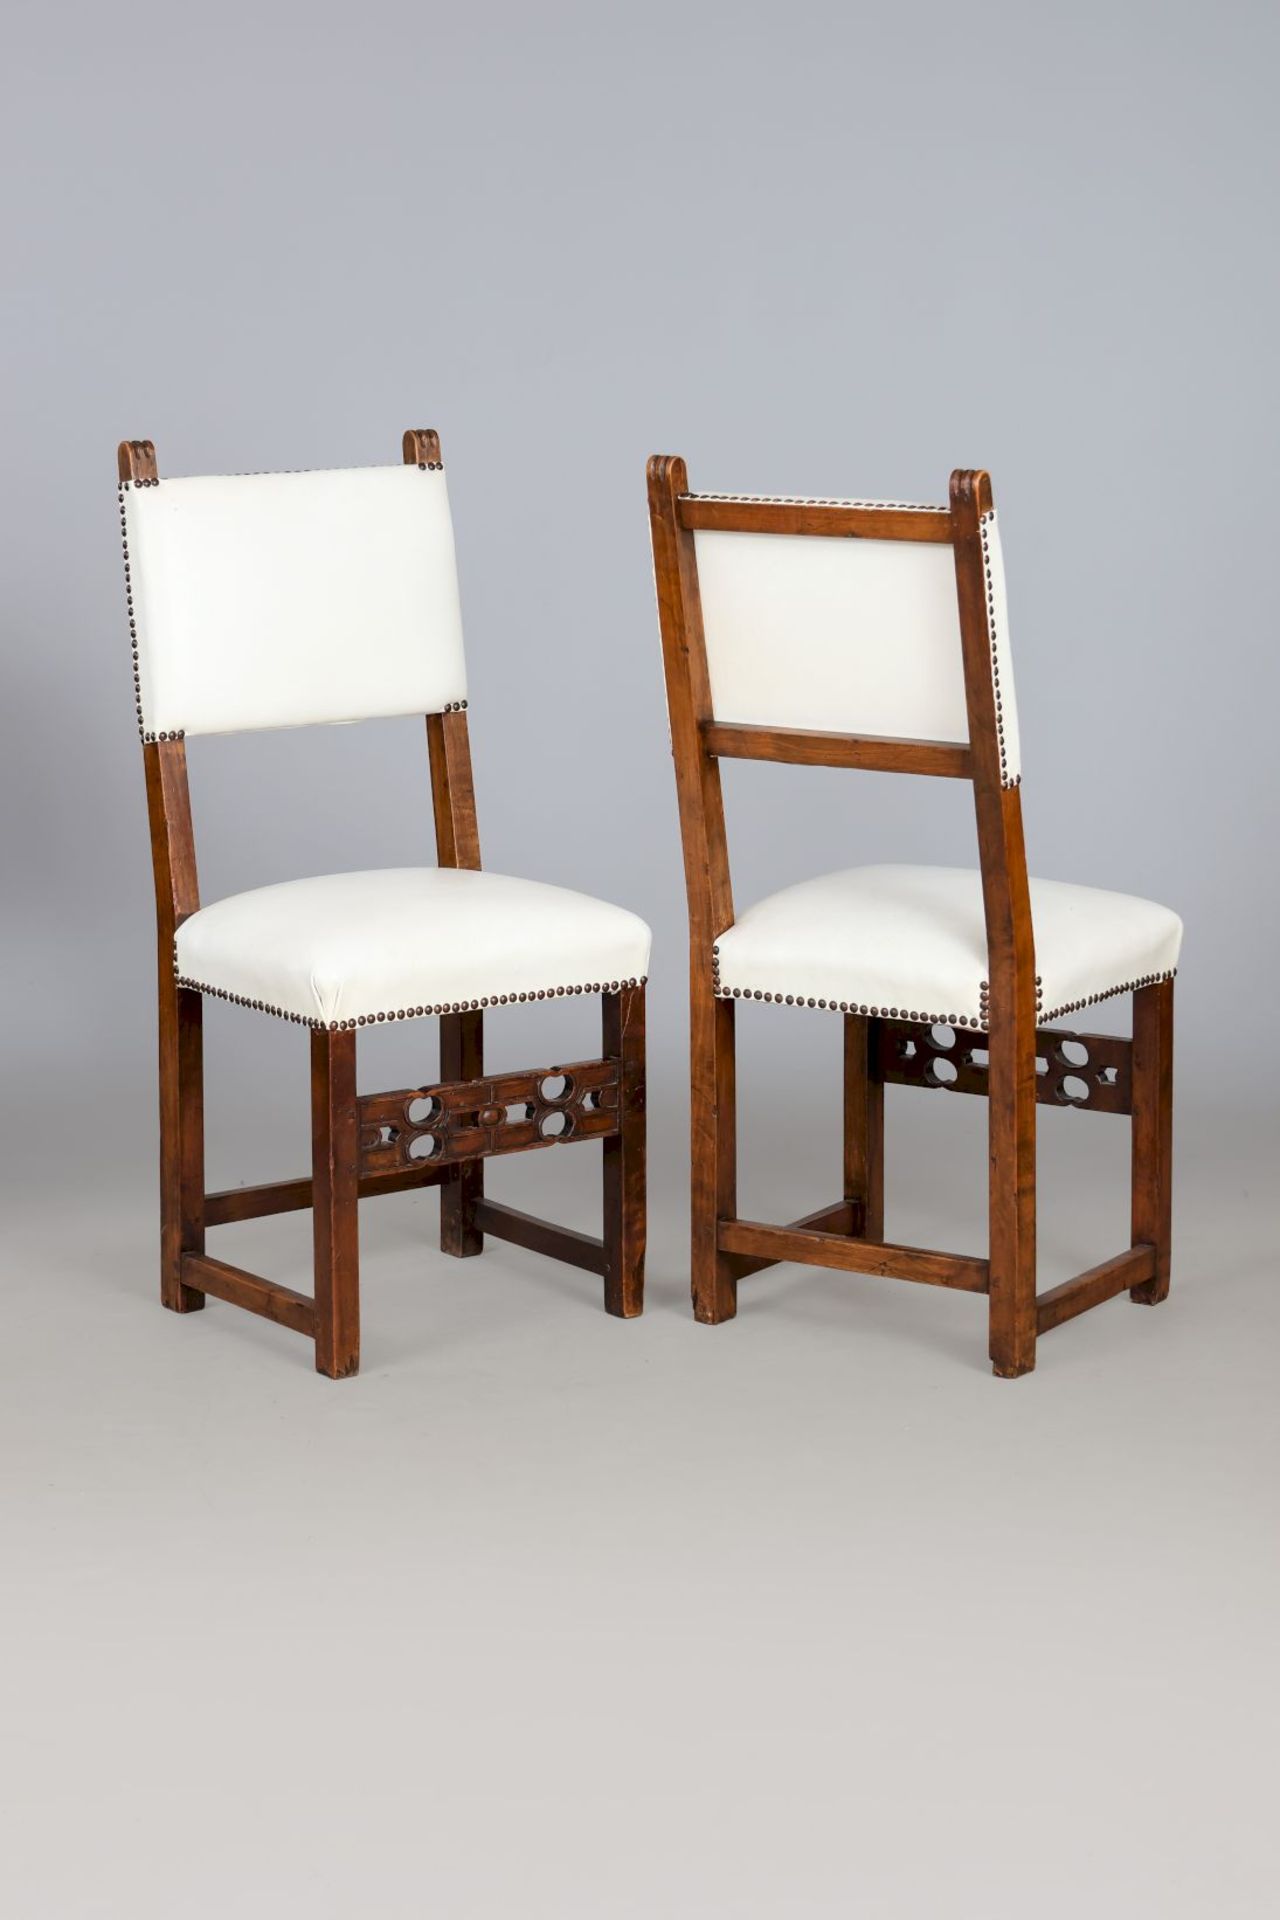 8 Stühle im Stile der iberischen Renaissance - Image 2 of 4